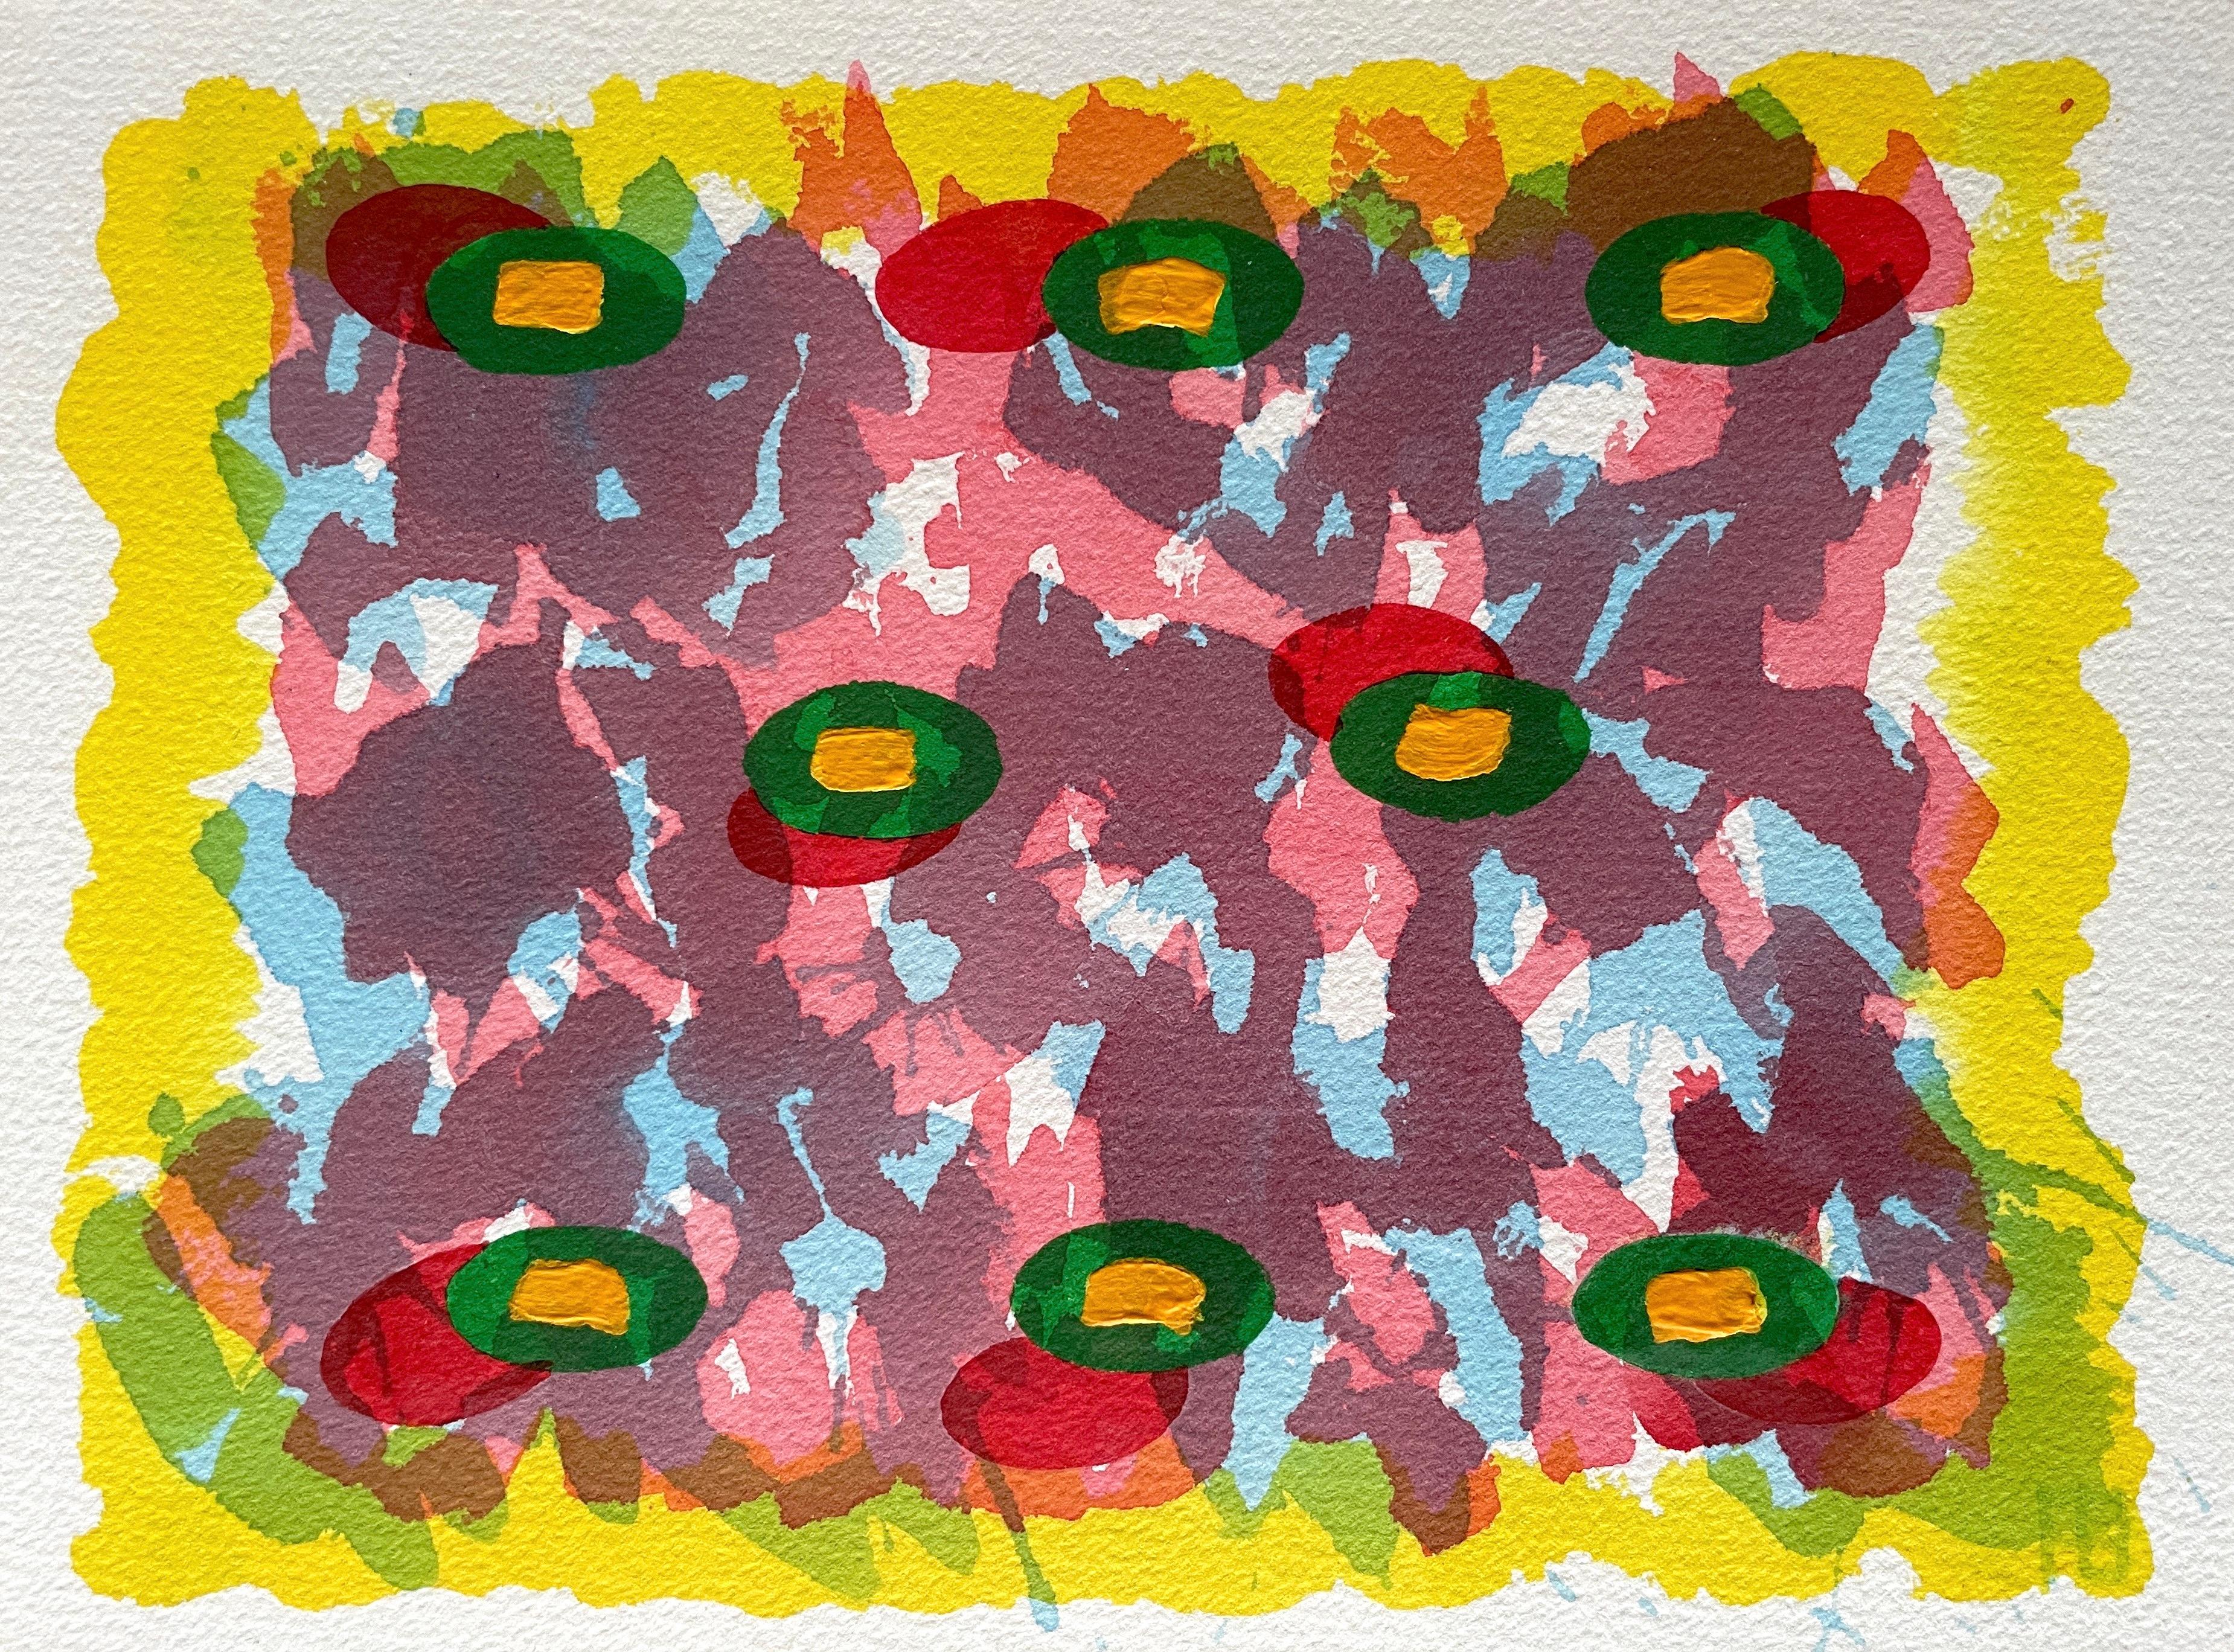 Abstraktes abstraktes Gemälde der Royal Society Arts, aufgeführt in Rosa, Lila, Gelb und Grün